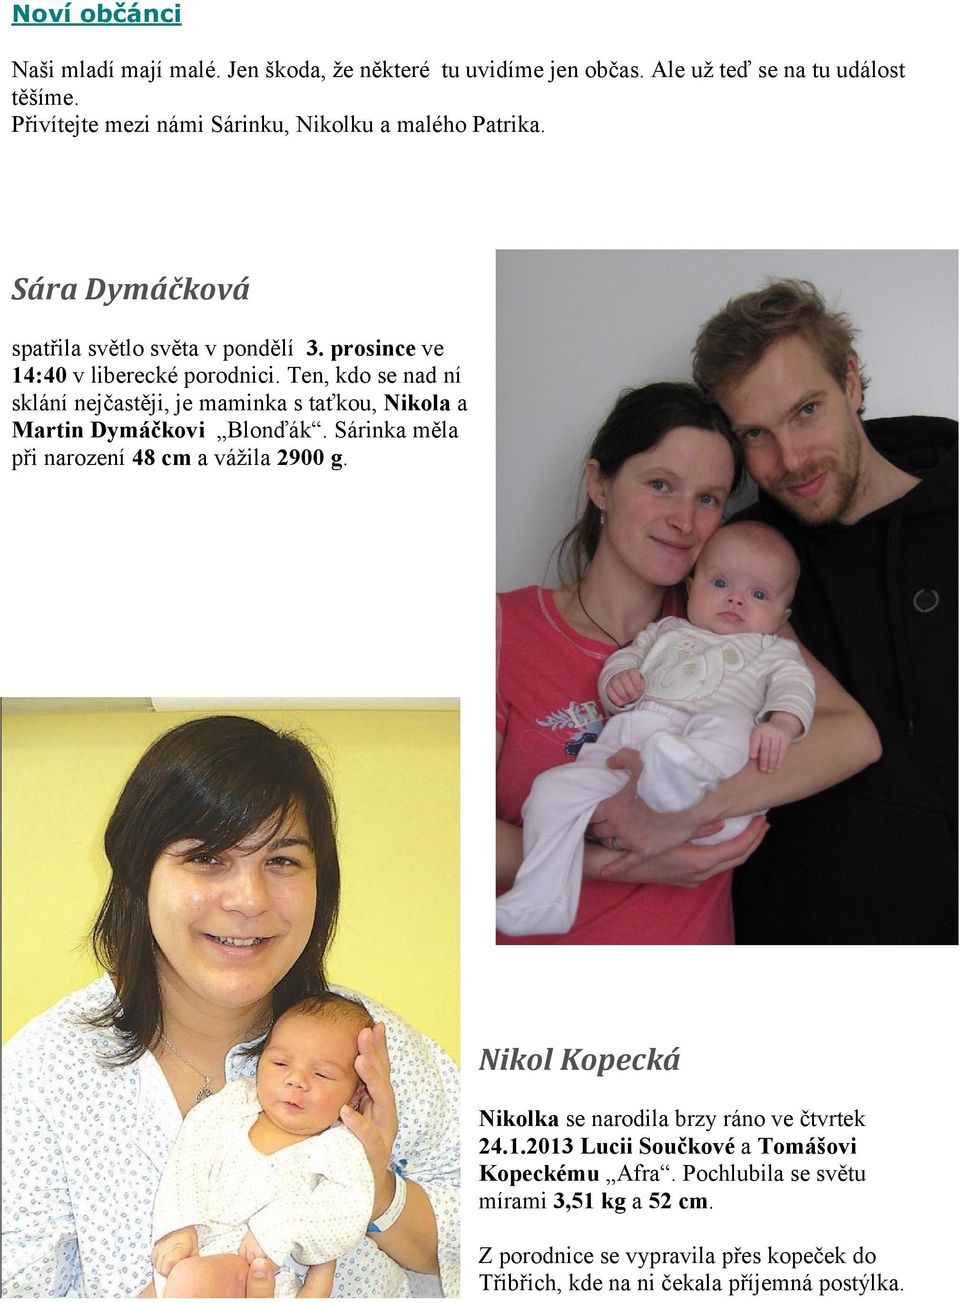 Ten, kdo se nad ní sklání nejčastěji, je maminka s taťkou, Nikola a Martin Dymáčkovi Blonďák. Sárinka měla při narození 48 cm a vážila 2900 g.